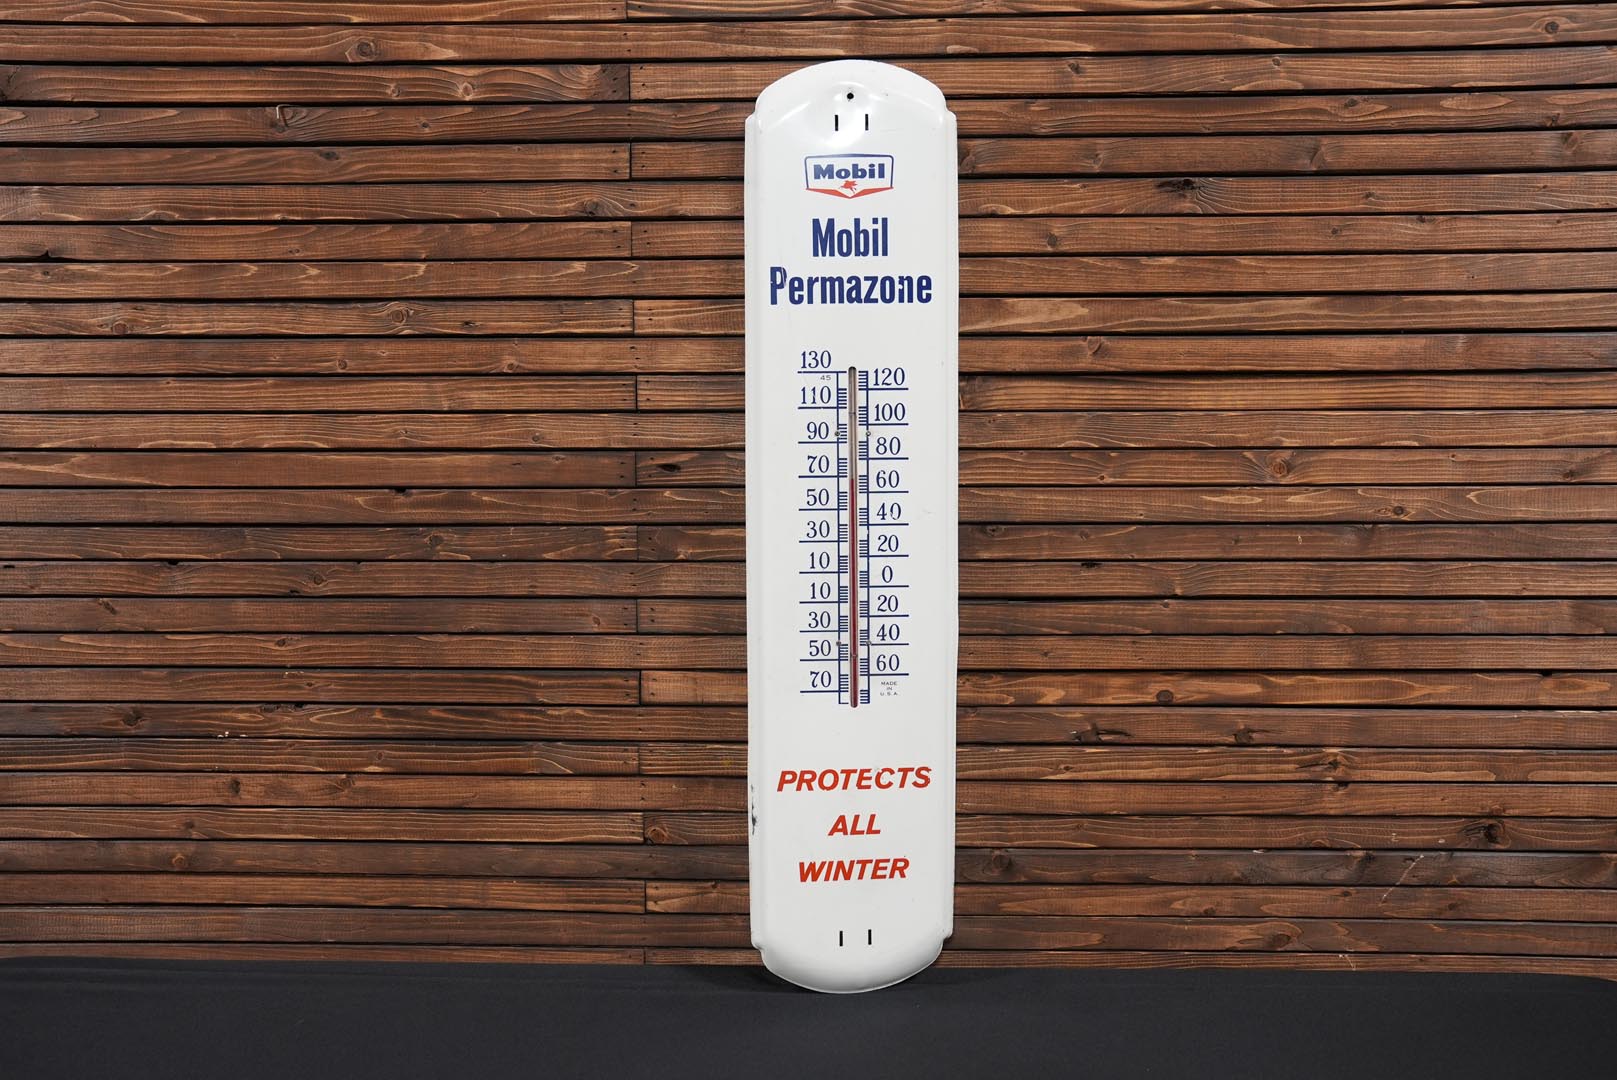  Mobil Permazone Thermometer  